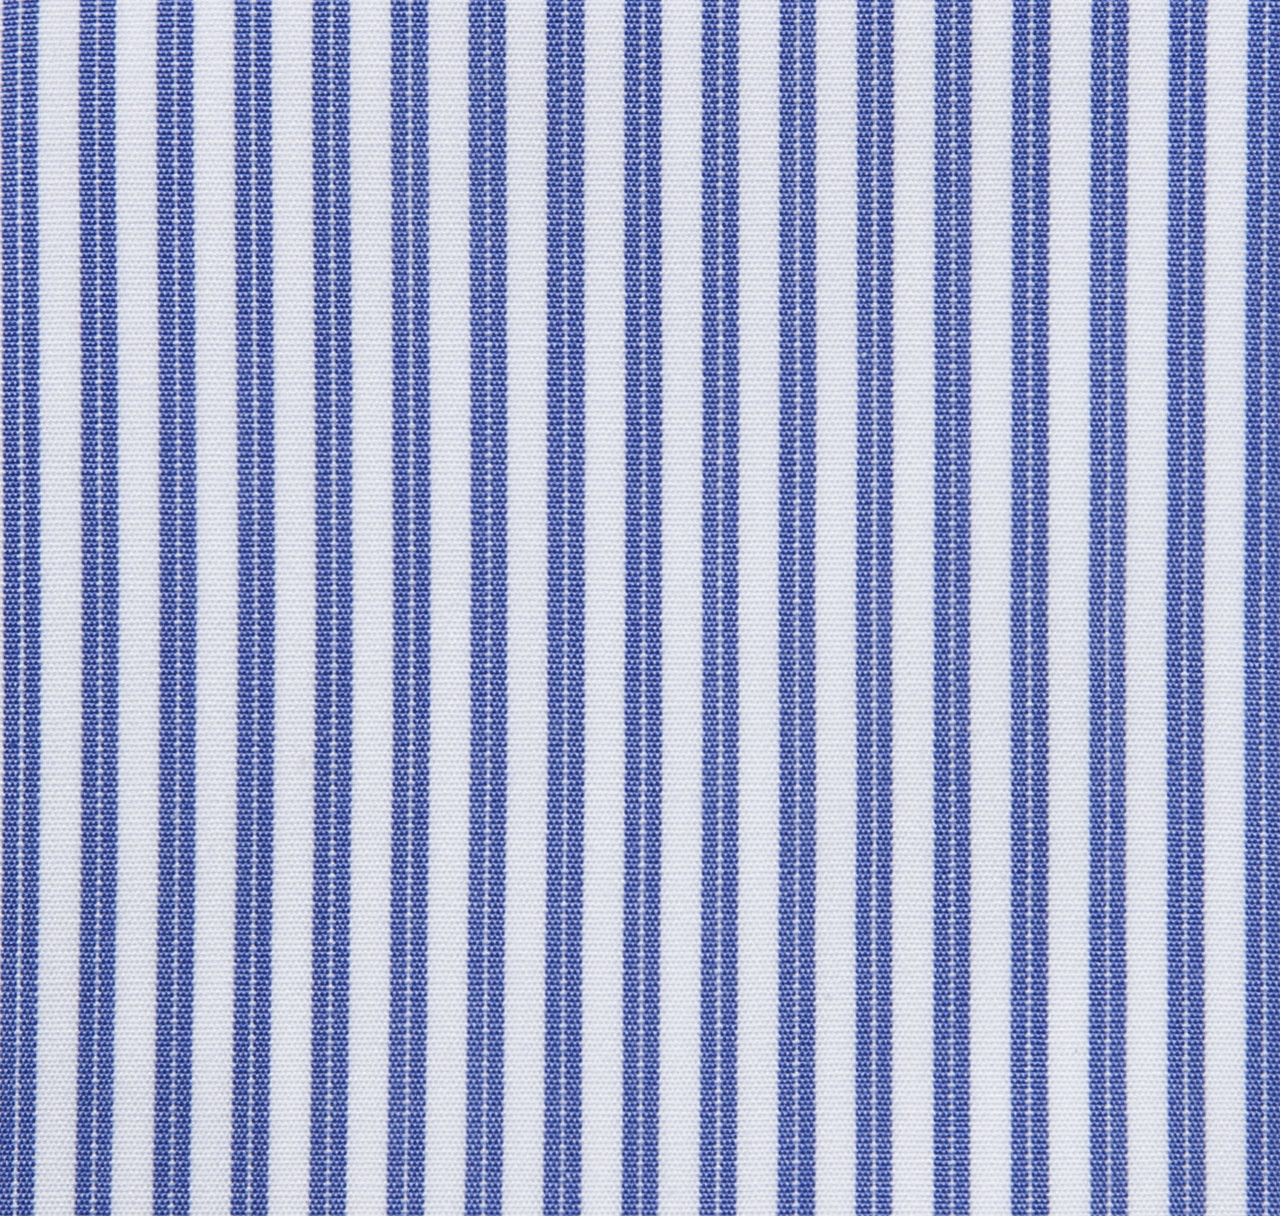 Lennox French Stripe Shirt French Cuff